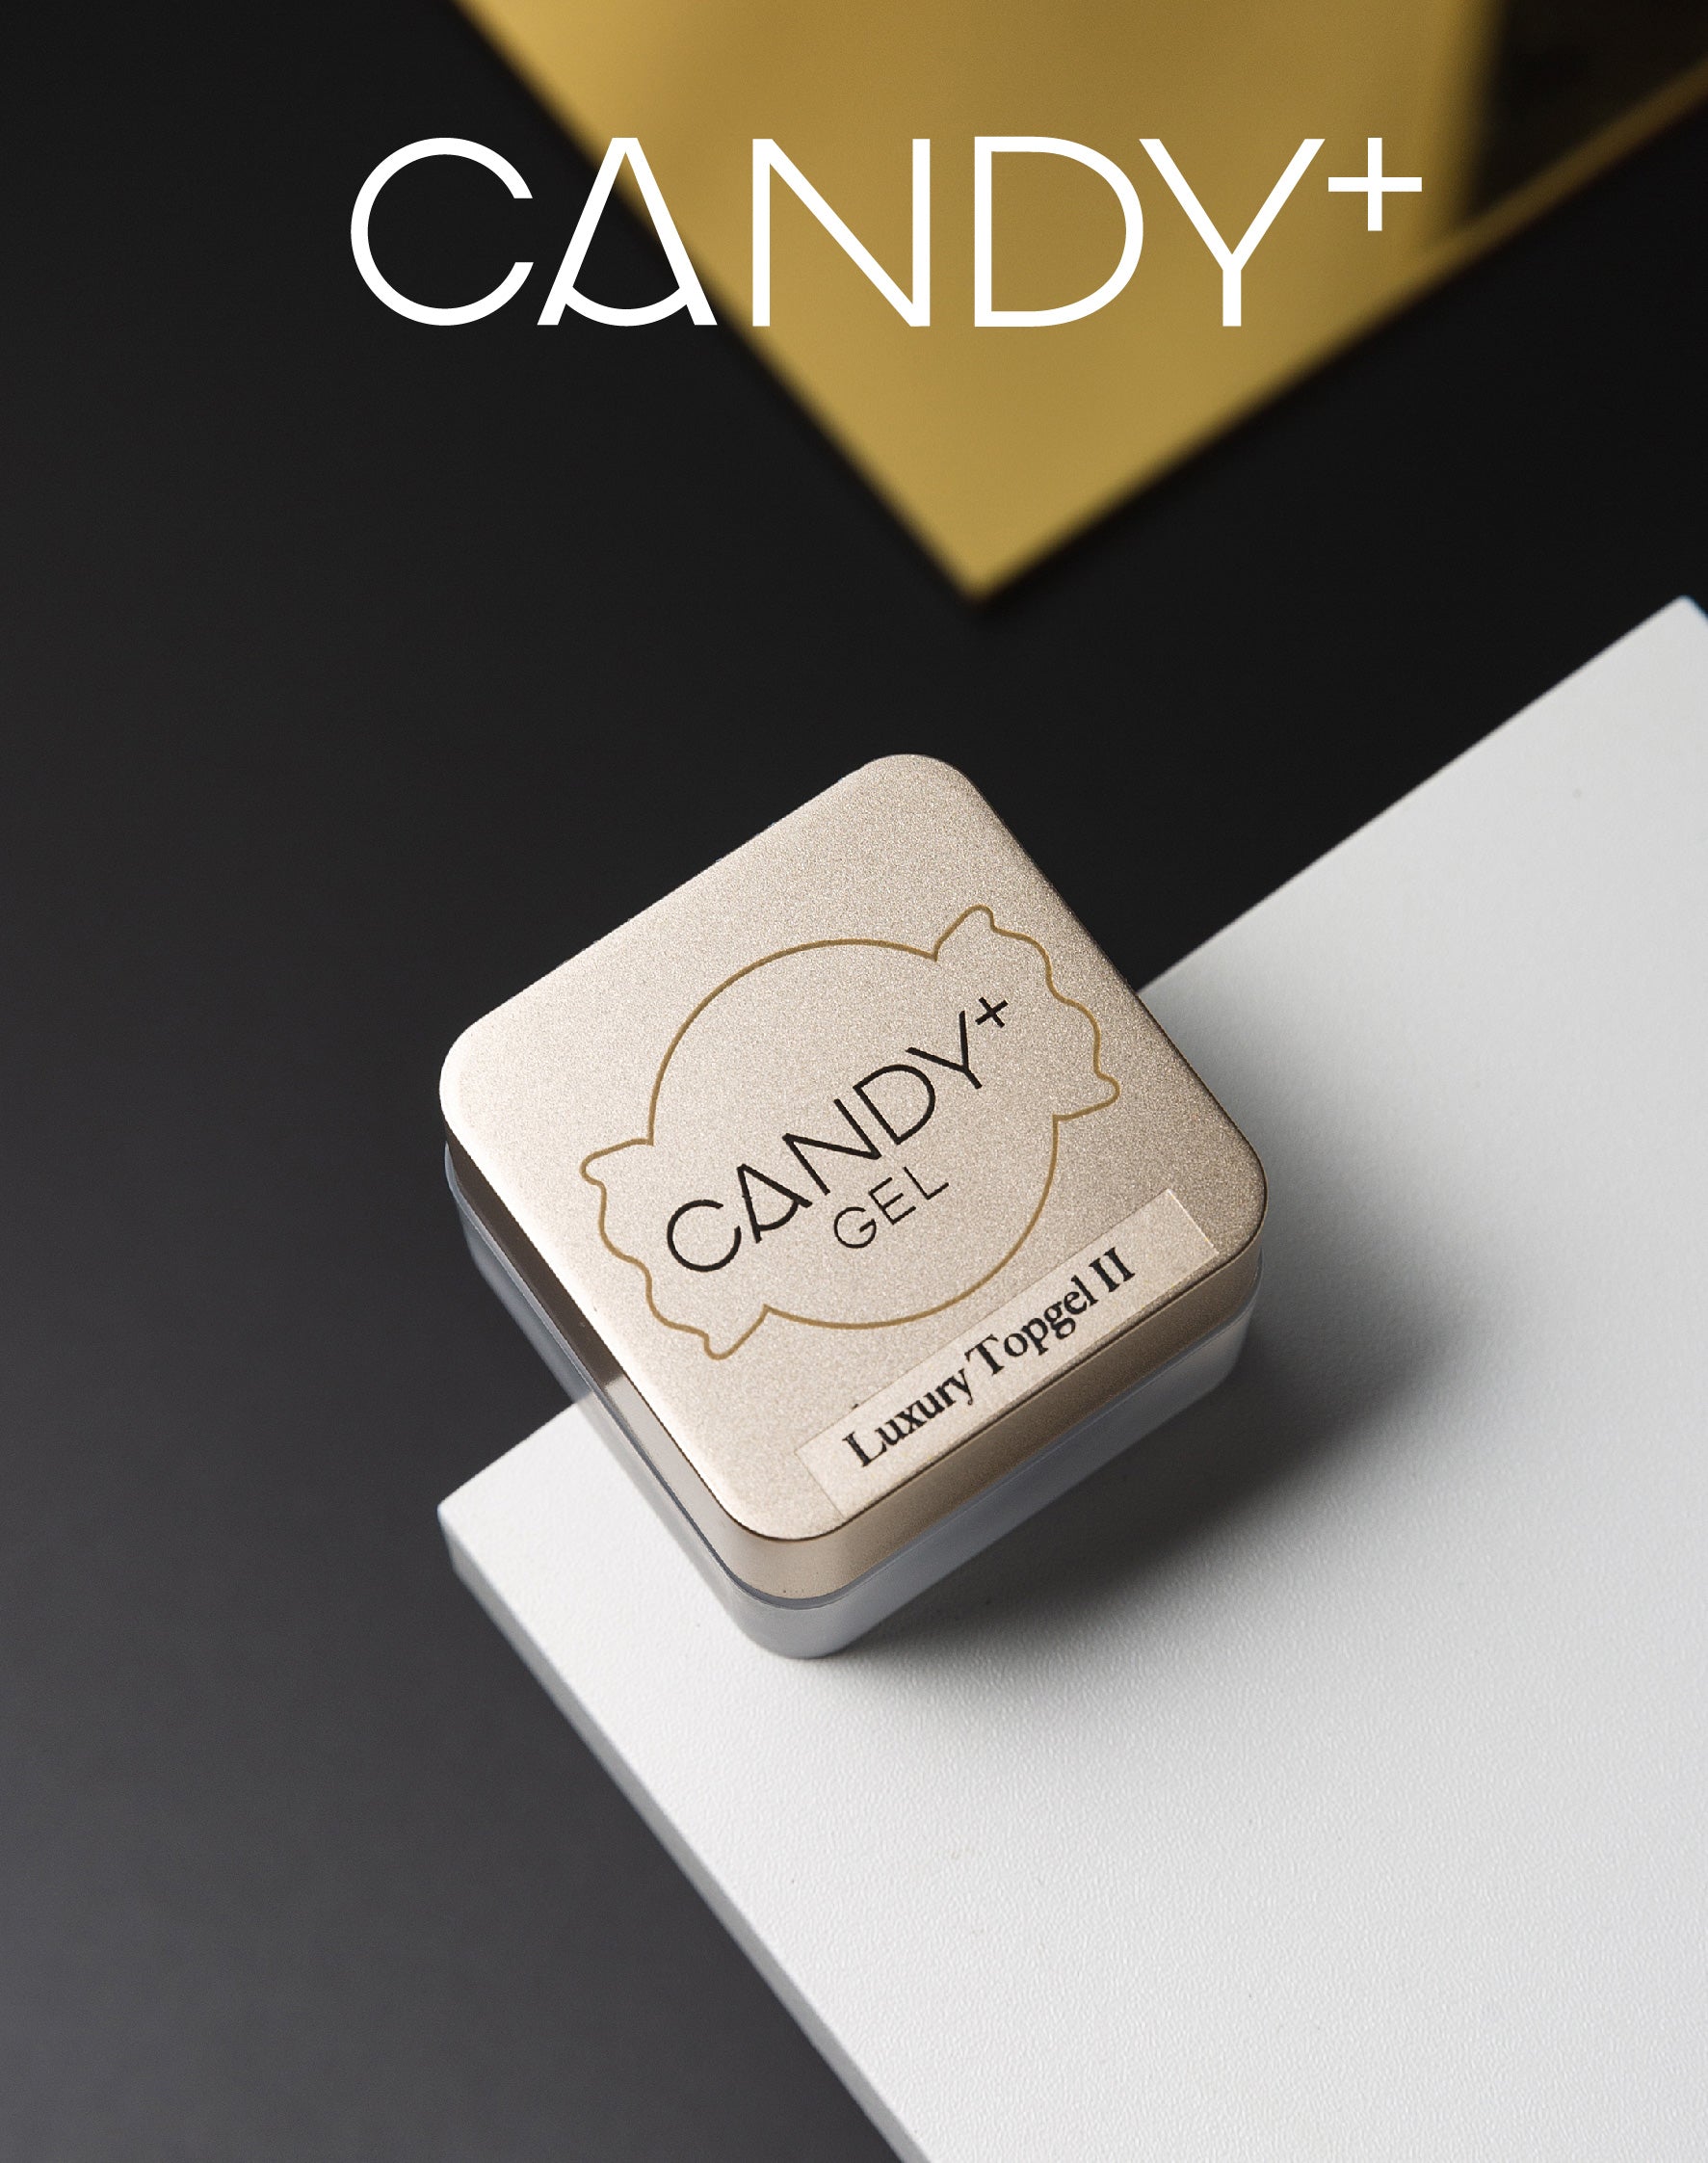 CANDY+ Non-Wipe Luxury Top gel II 3D art Japan